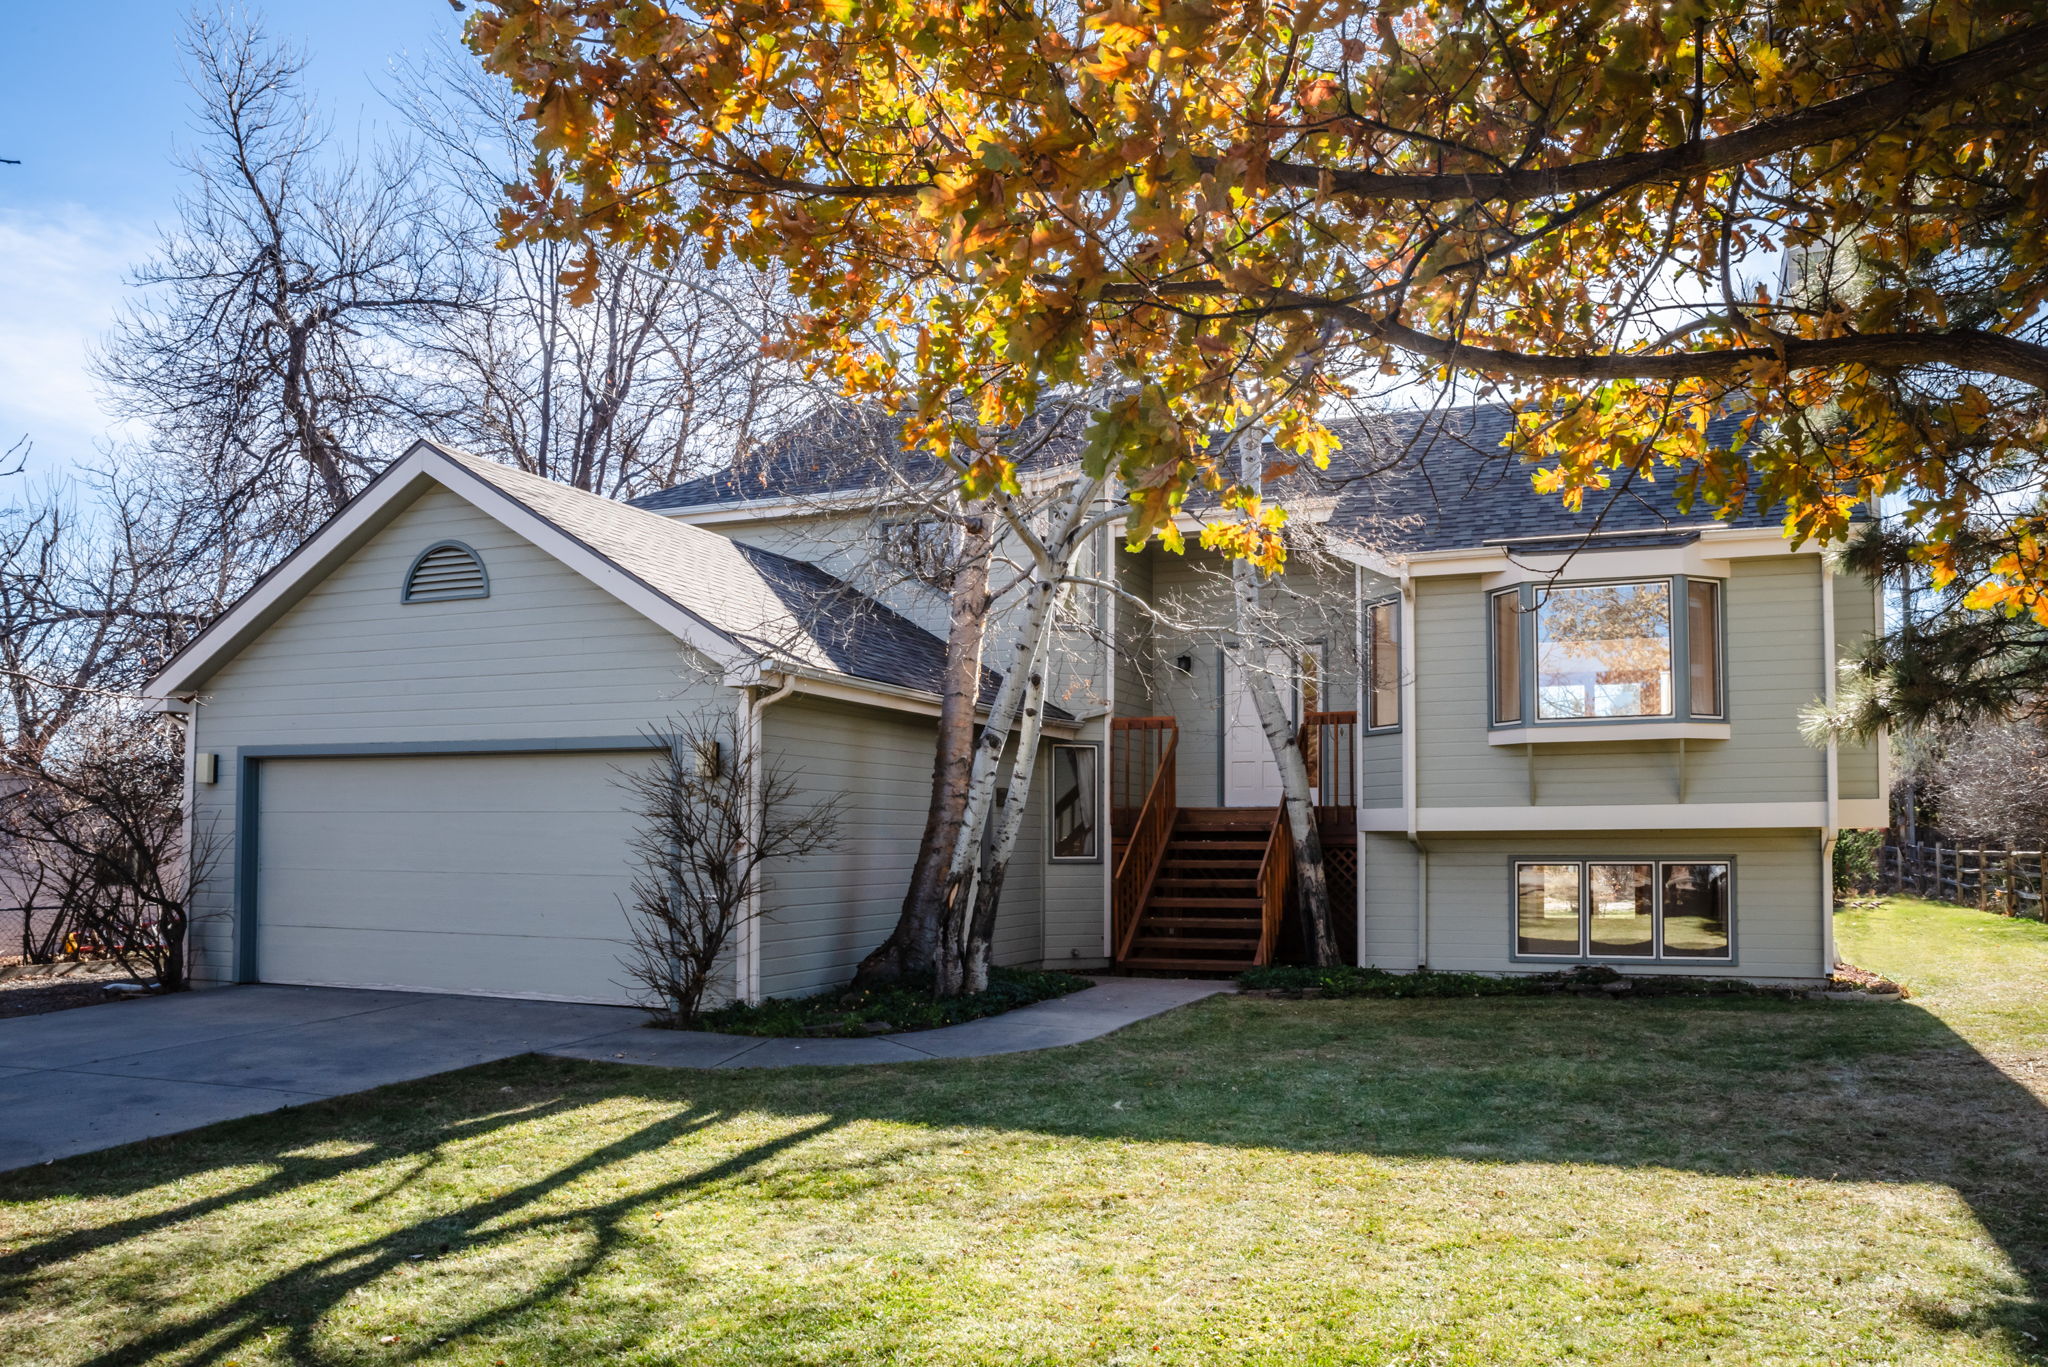 For Sale: 2080 Orchard Avenue, Boulder, CO 80304 - John Farley Real Estate